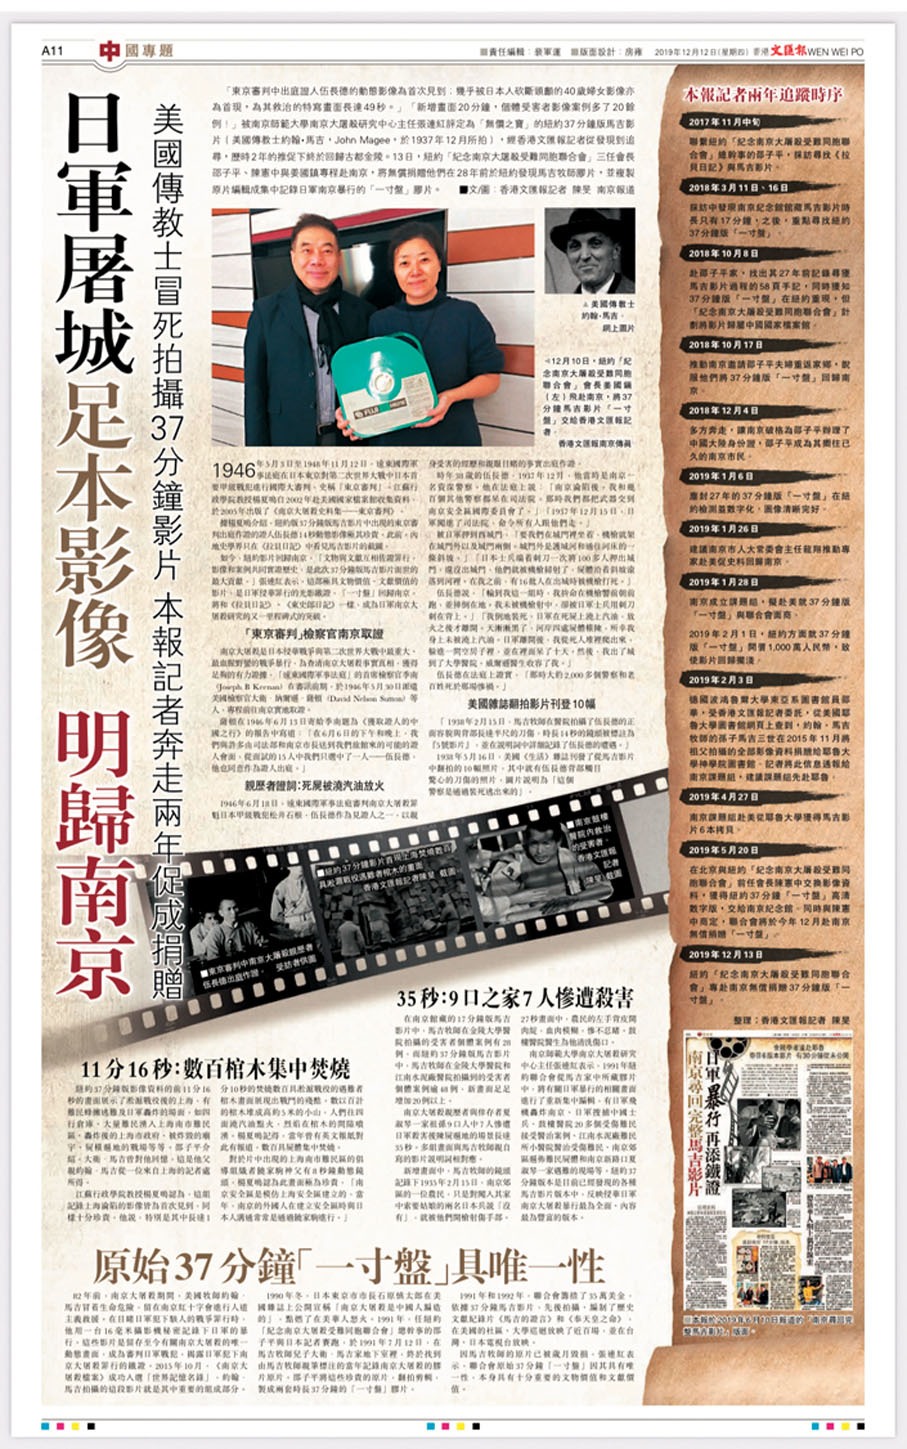 ◆2019年12月12日，香港文匯報報道「聯合會」會長姜國鎮將馬吉影片37分鐘版膠片交給香港文匯報記者。